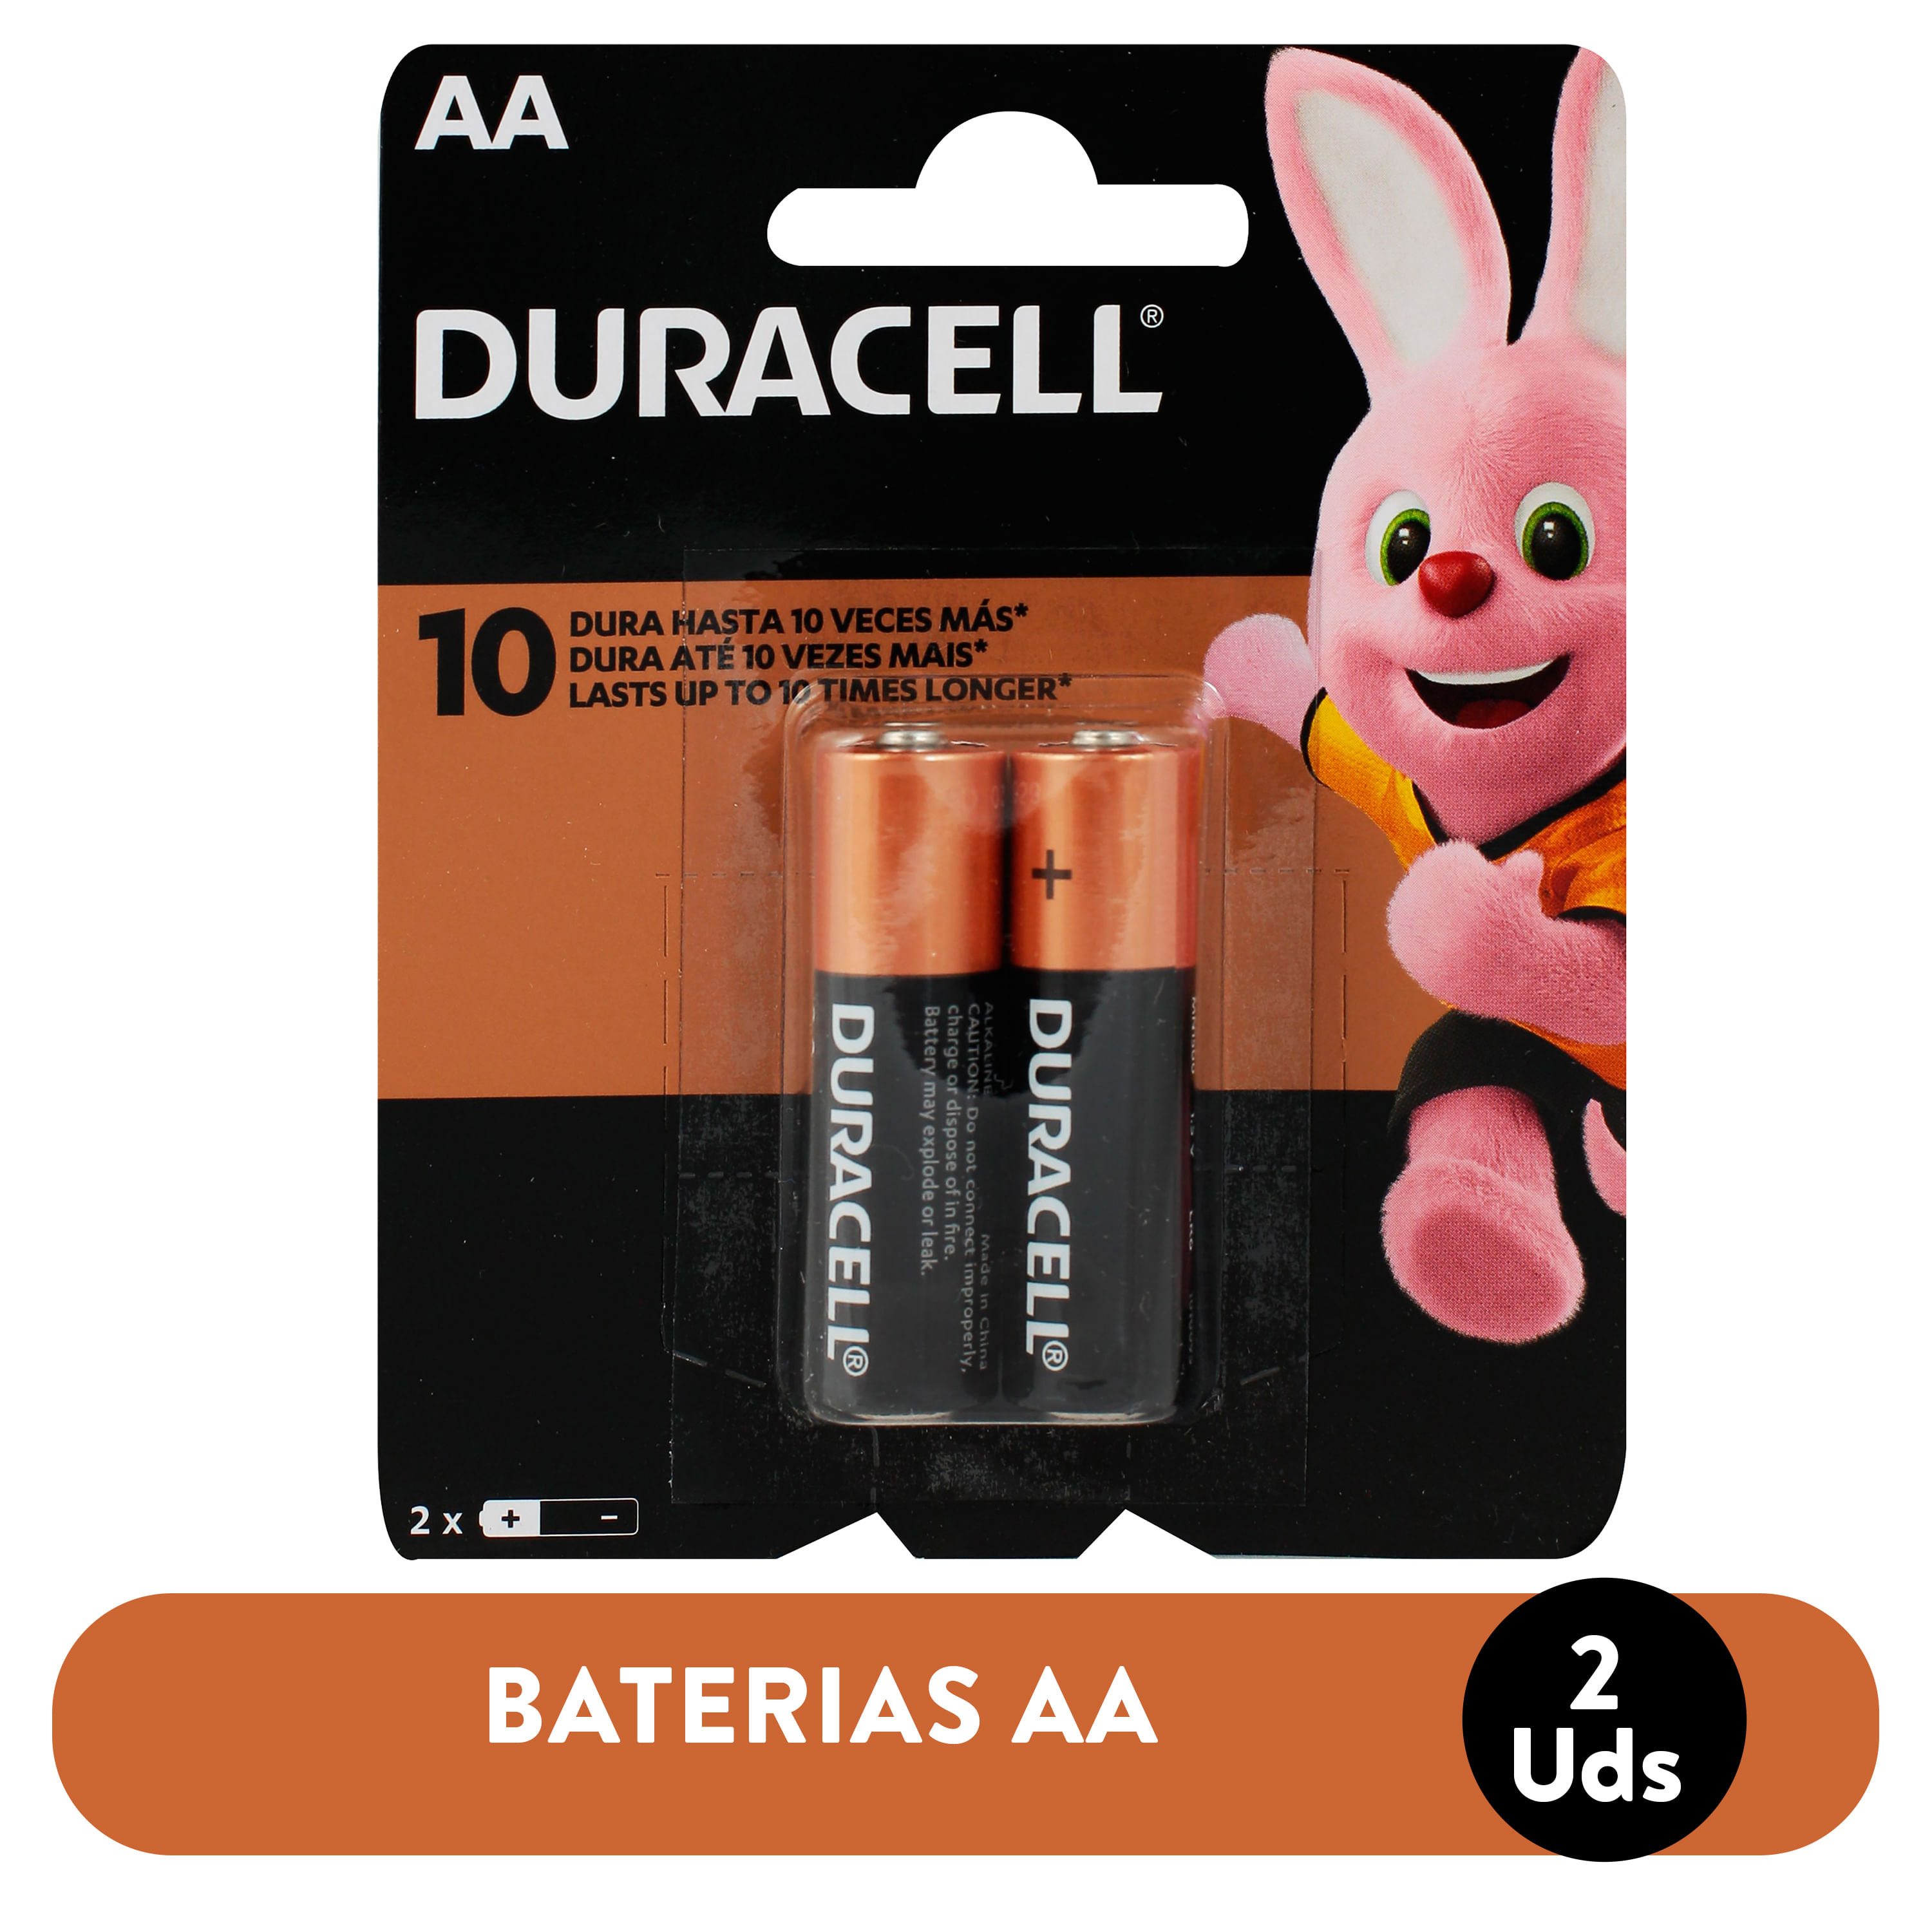 Batería 9V alcalina – Tienda en Costa Rica